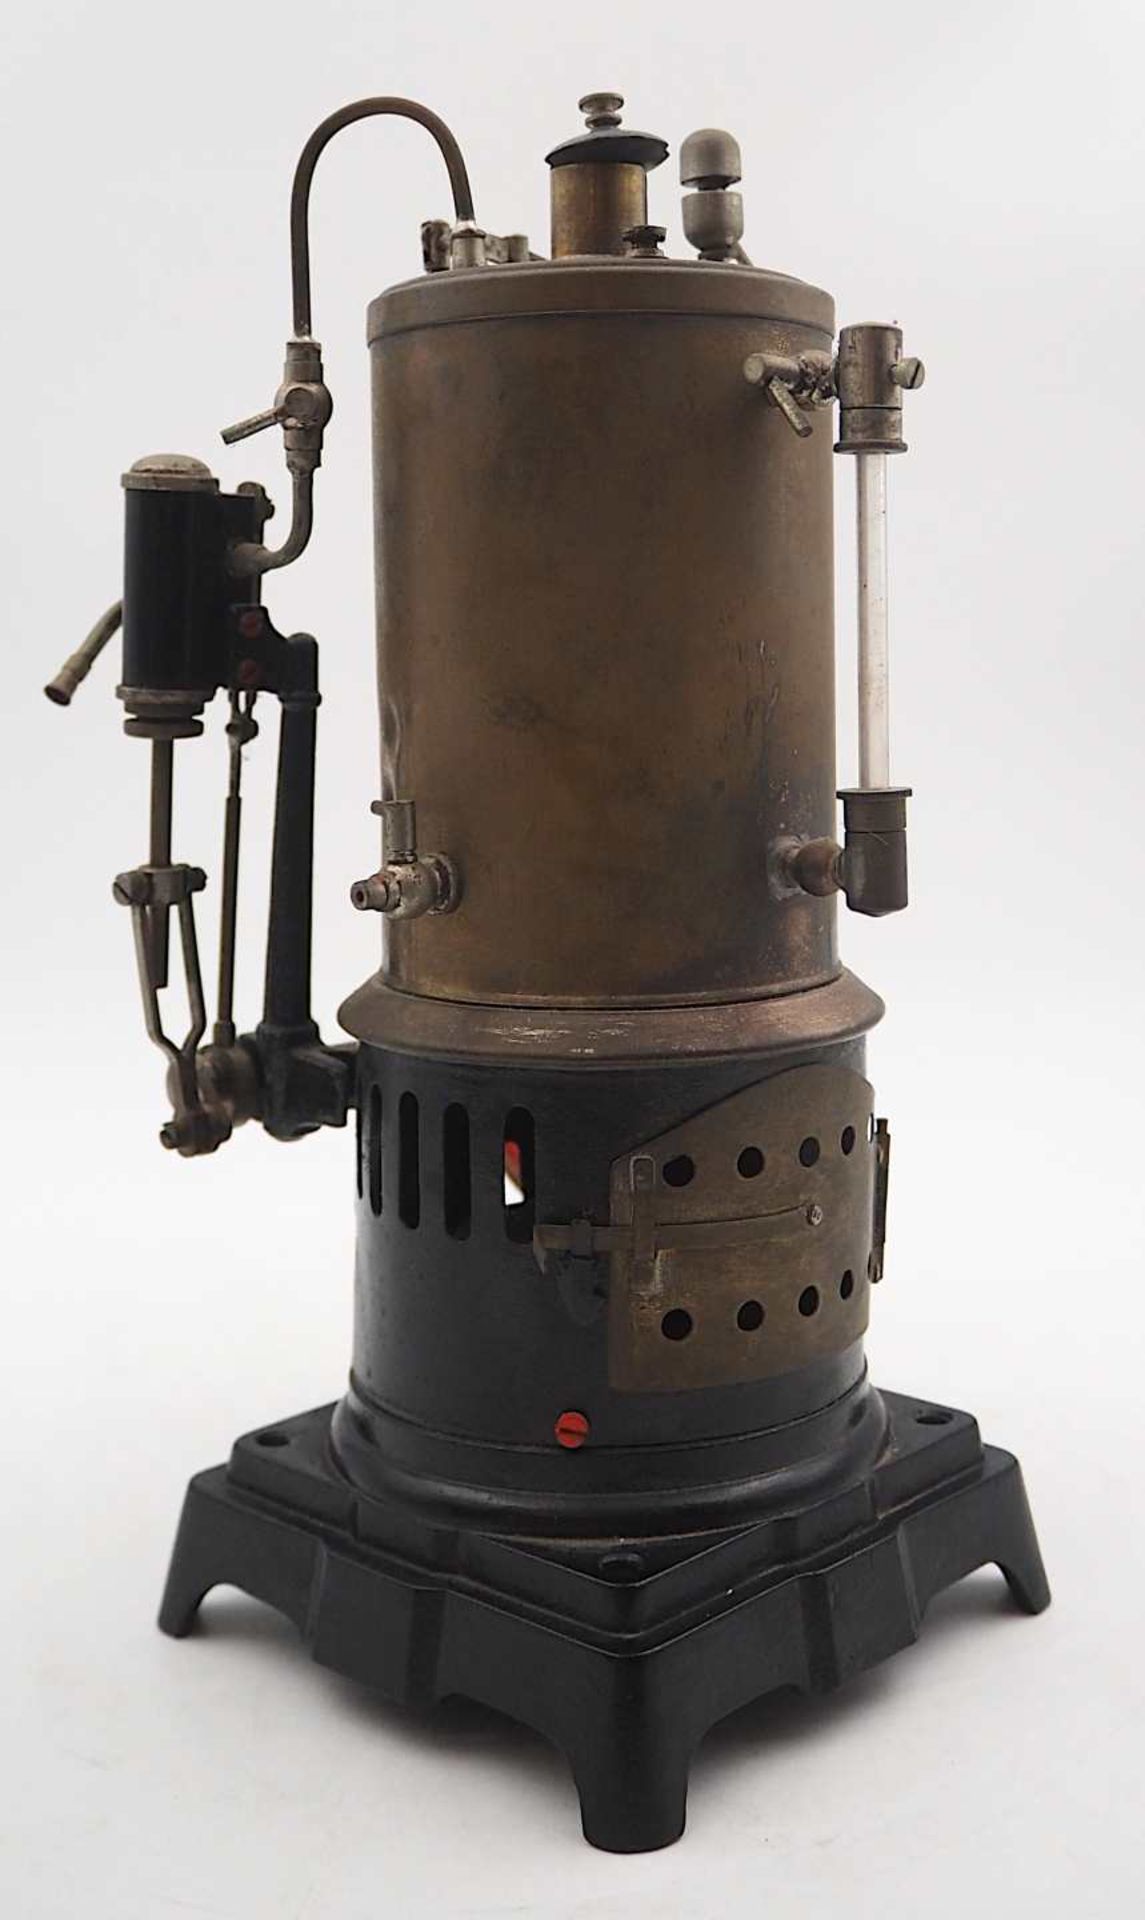 1 Dampfmaschine wohl um 1900/1910, Metall/Messing mit Kocher, Schwungrad u.a., H ca. 2